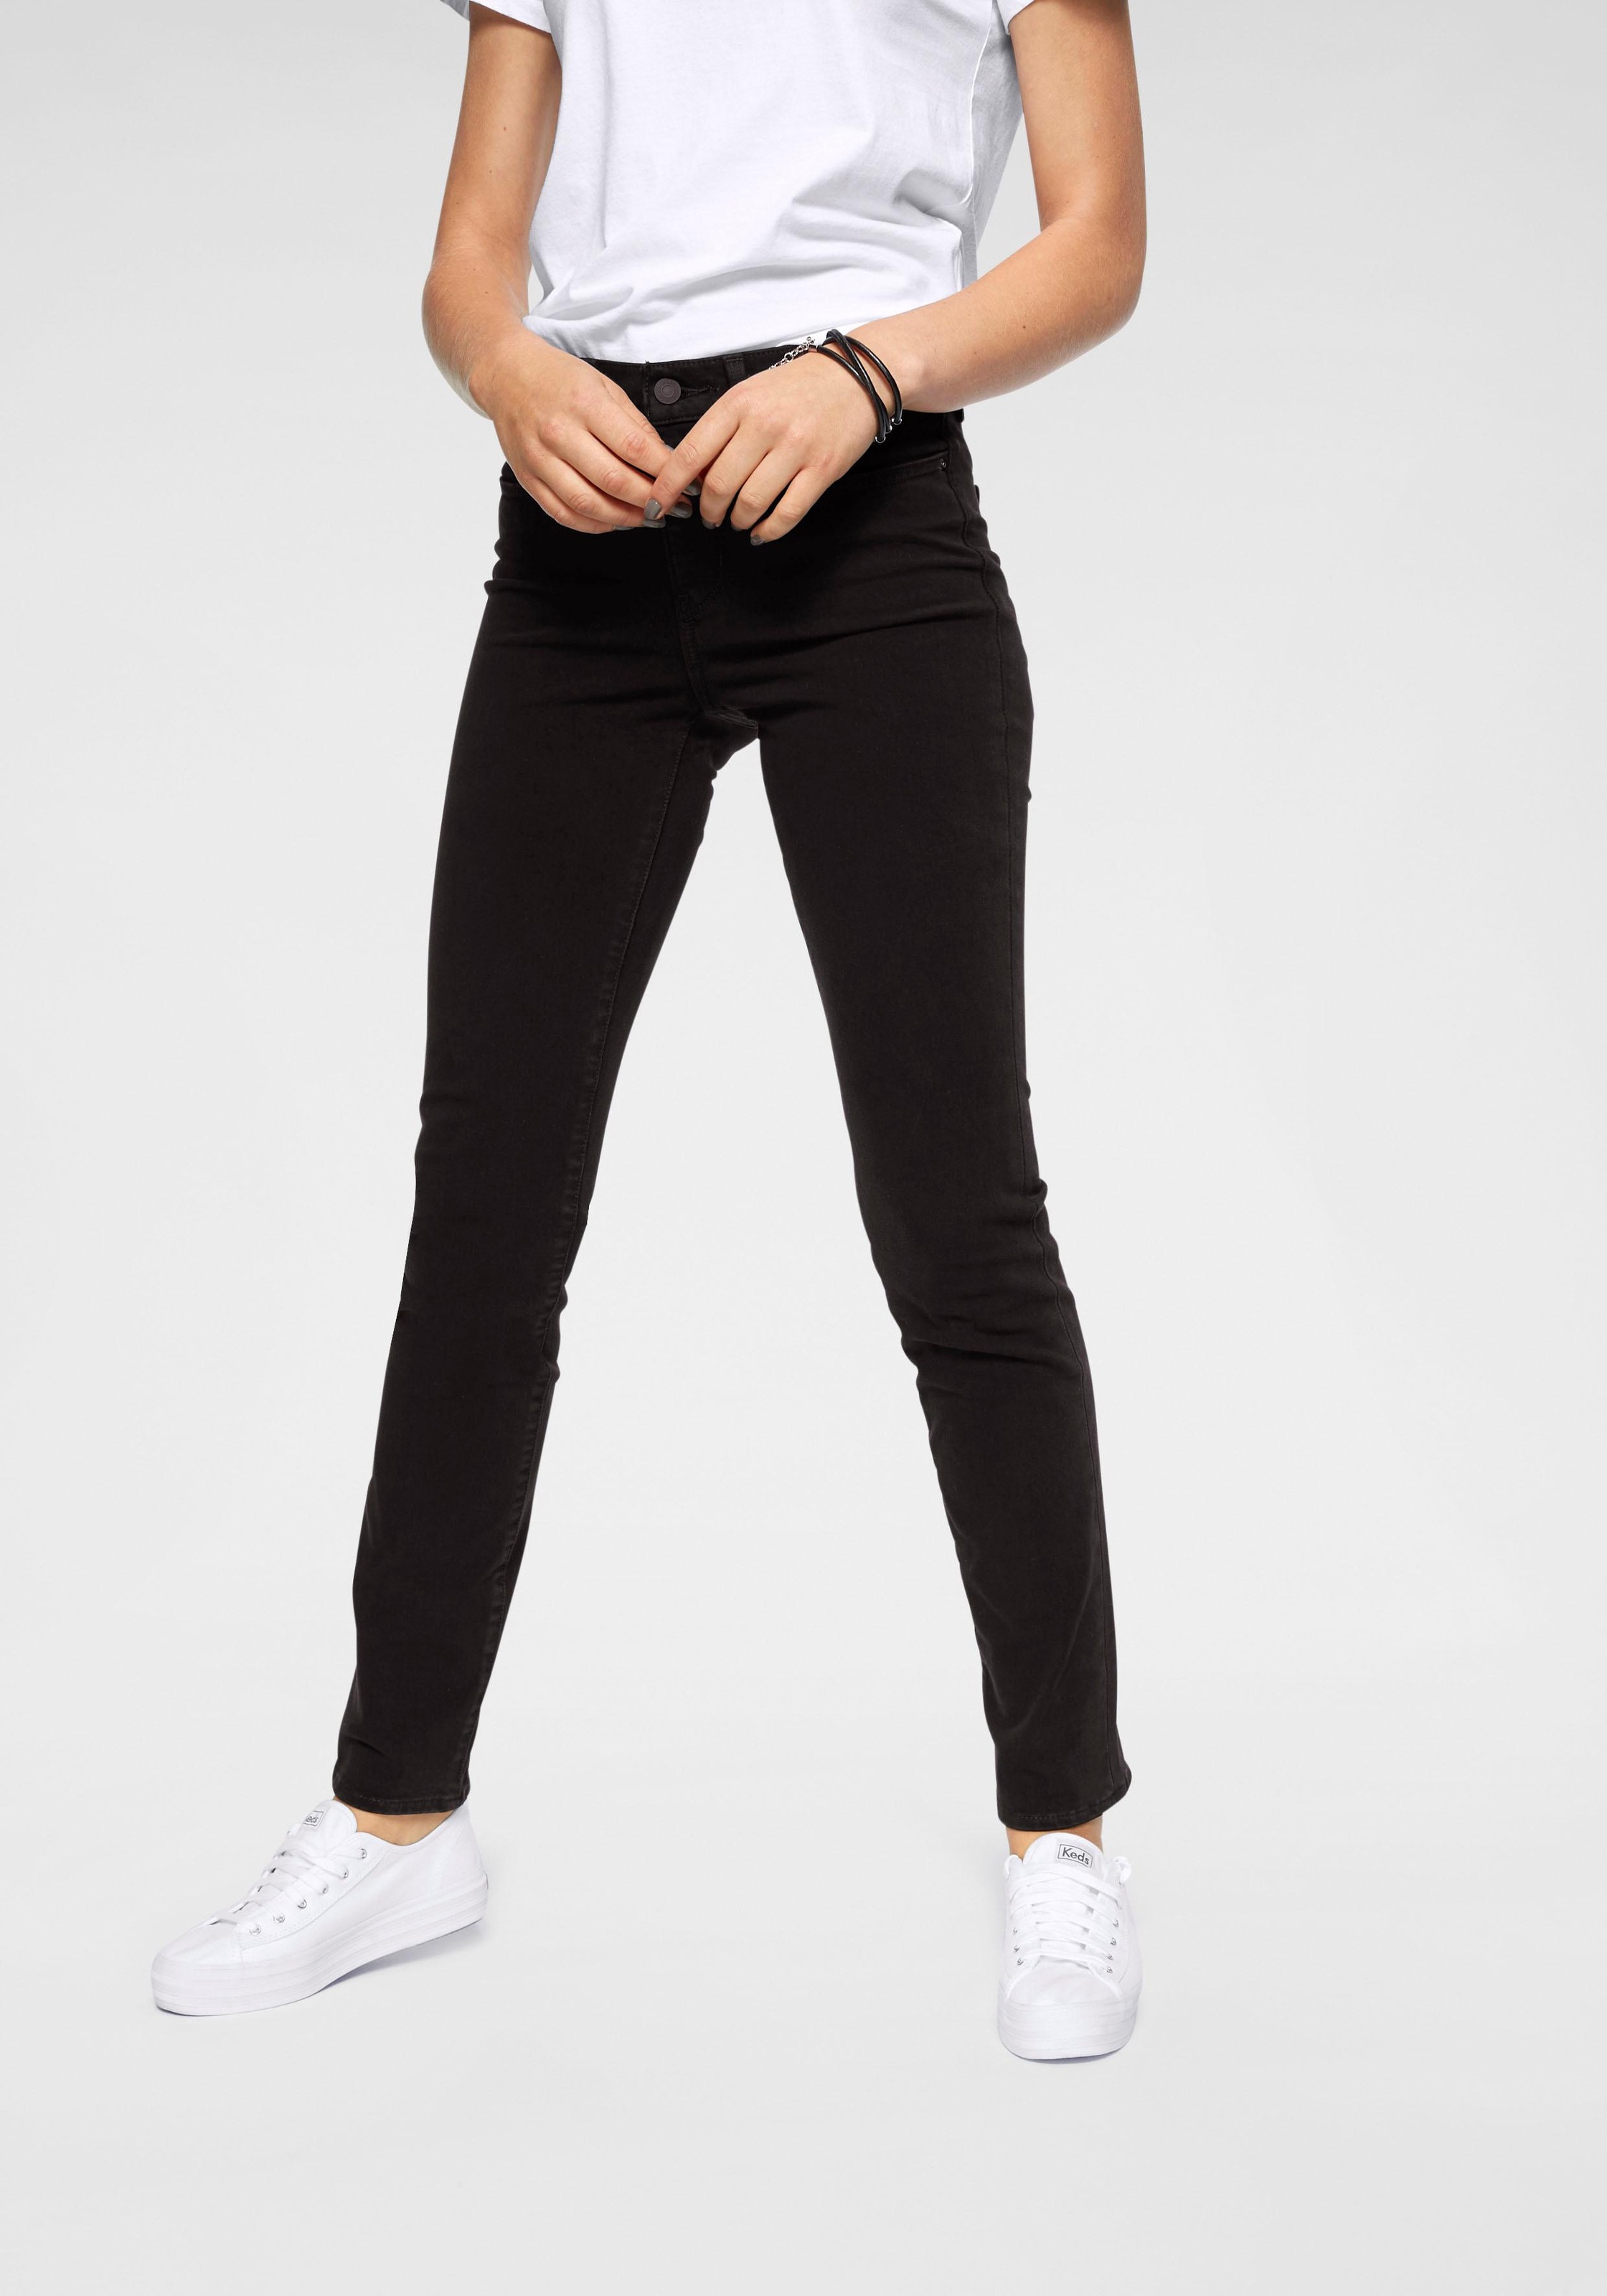 Skinny-Jeans online kaufen | Modische Röhrenjeans bei Ackermann